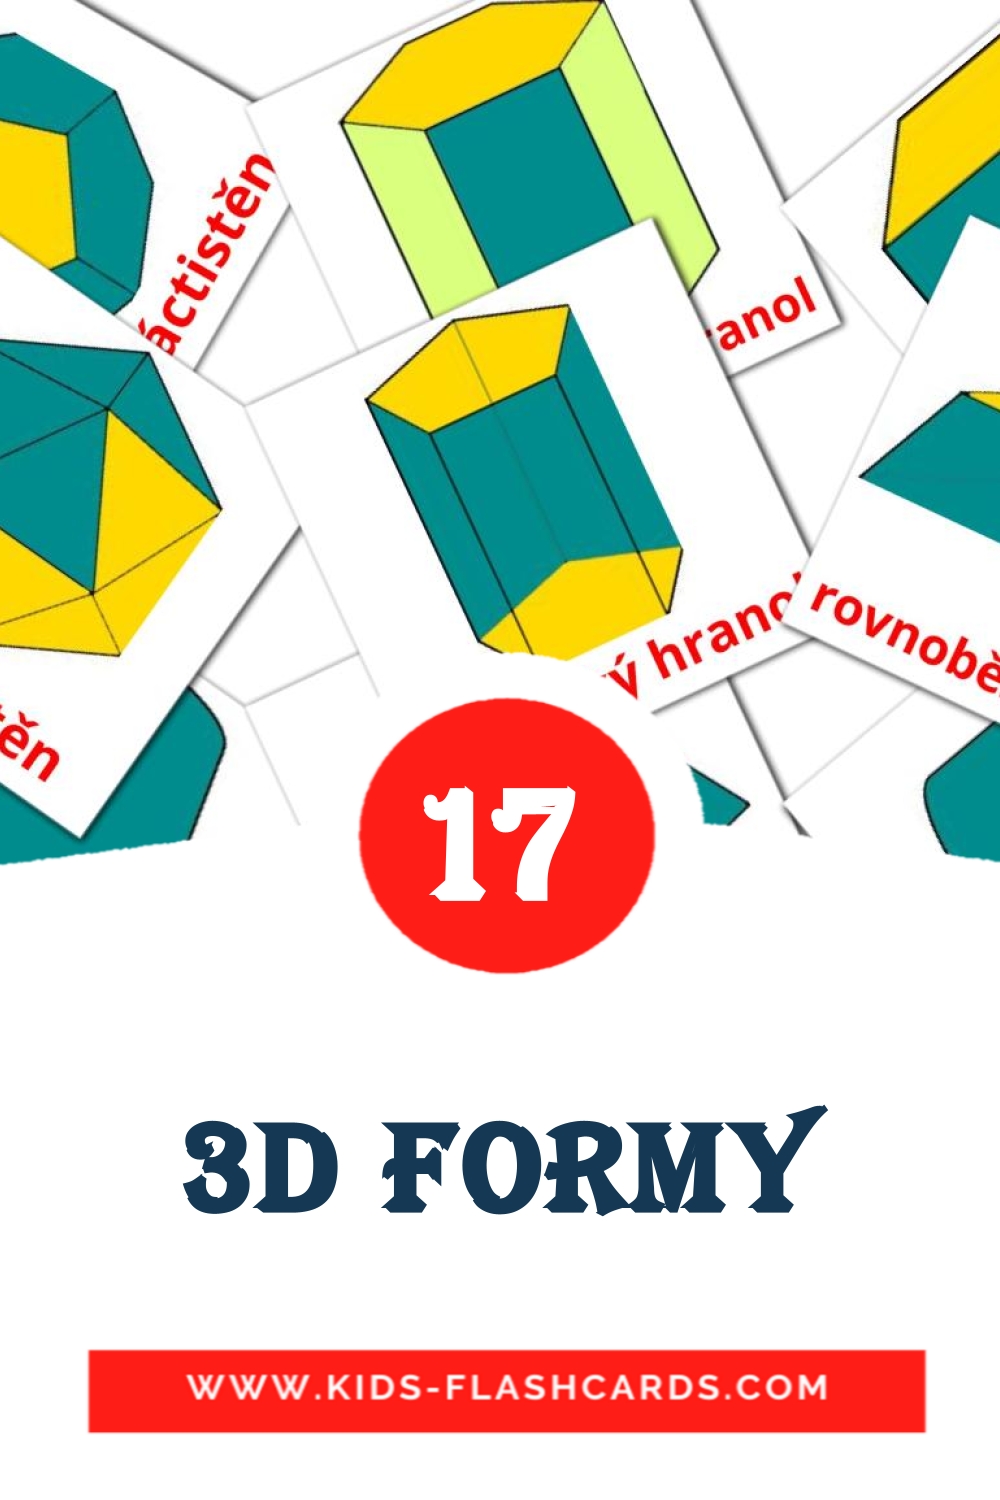 17 carte illustrate di 3D formy per la scuola materna in ceco